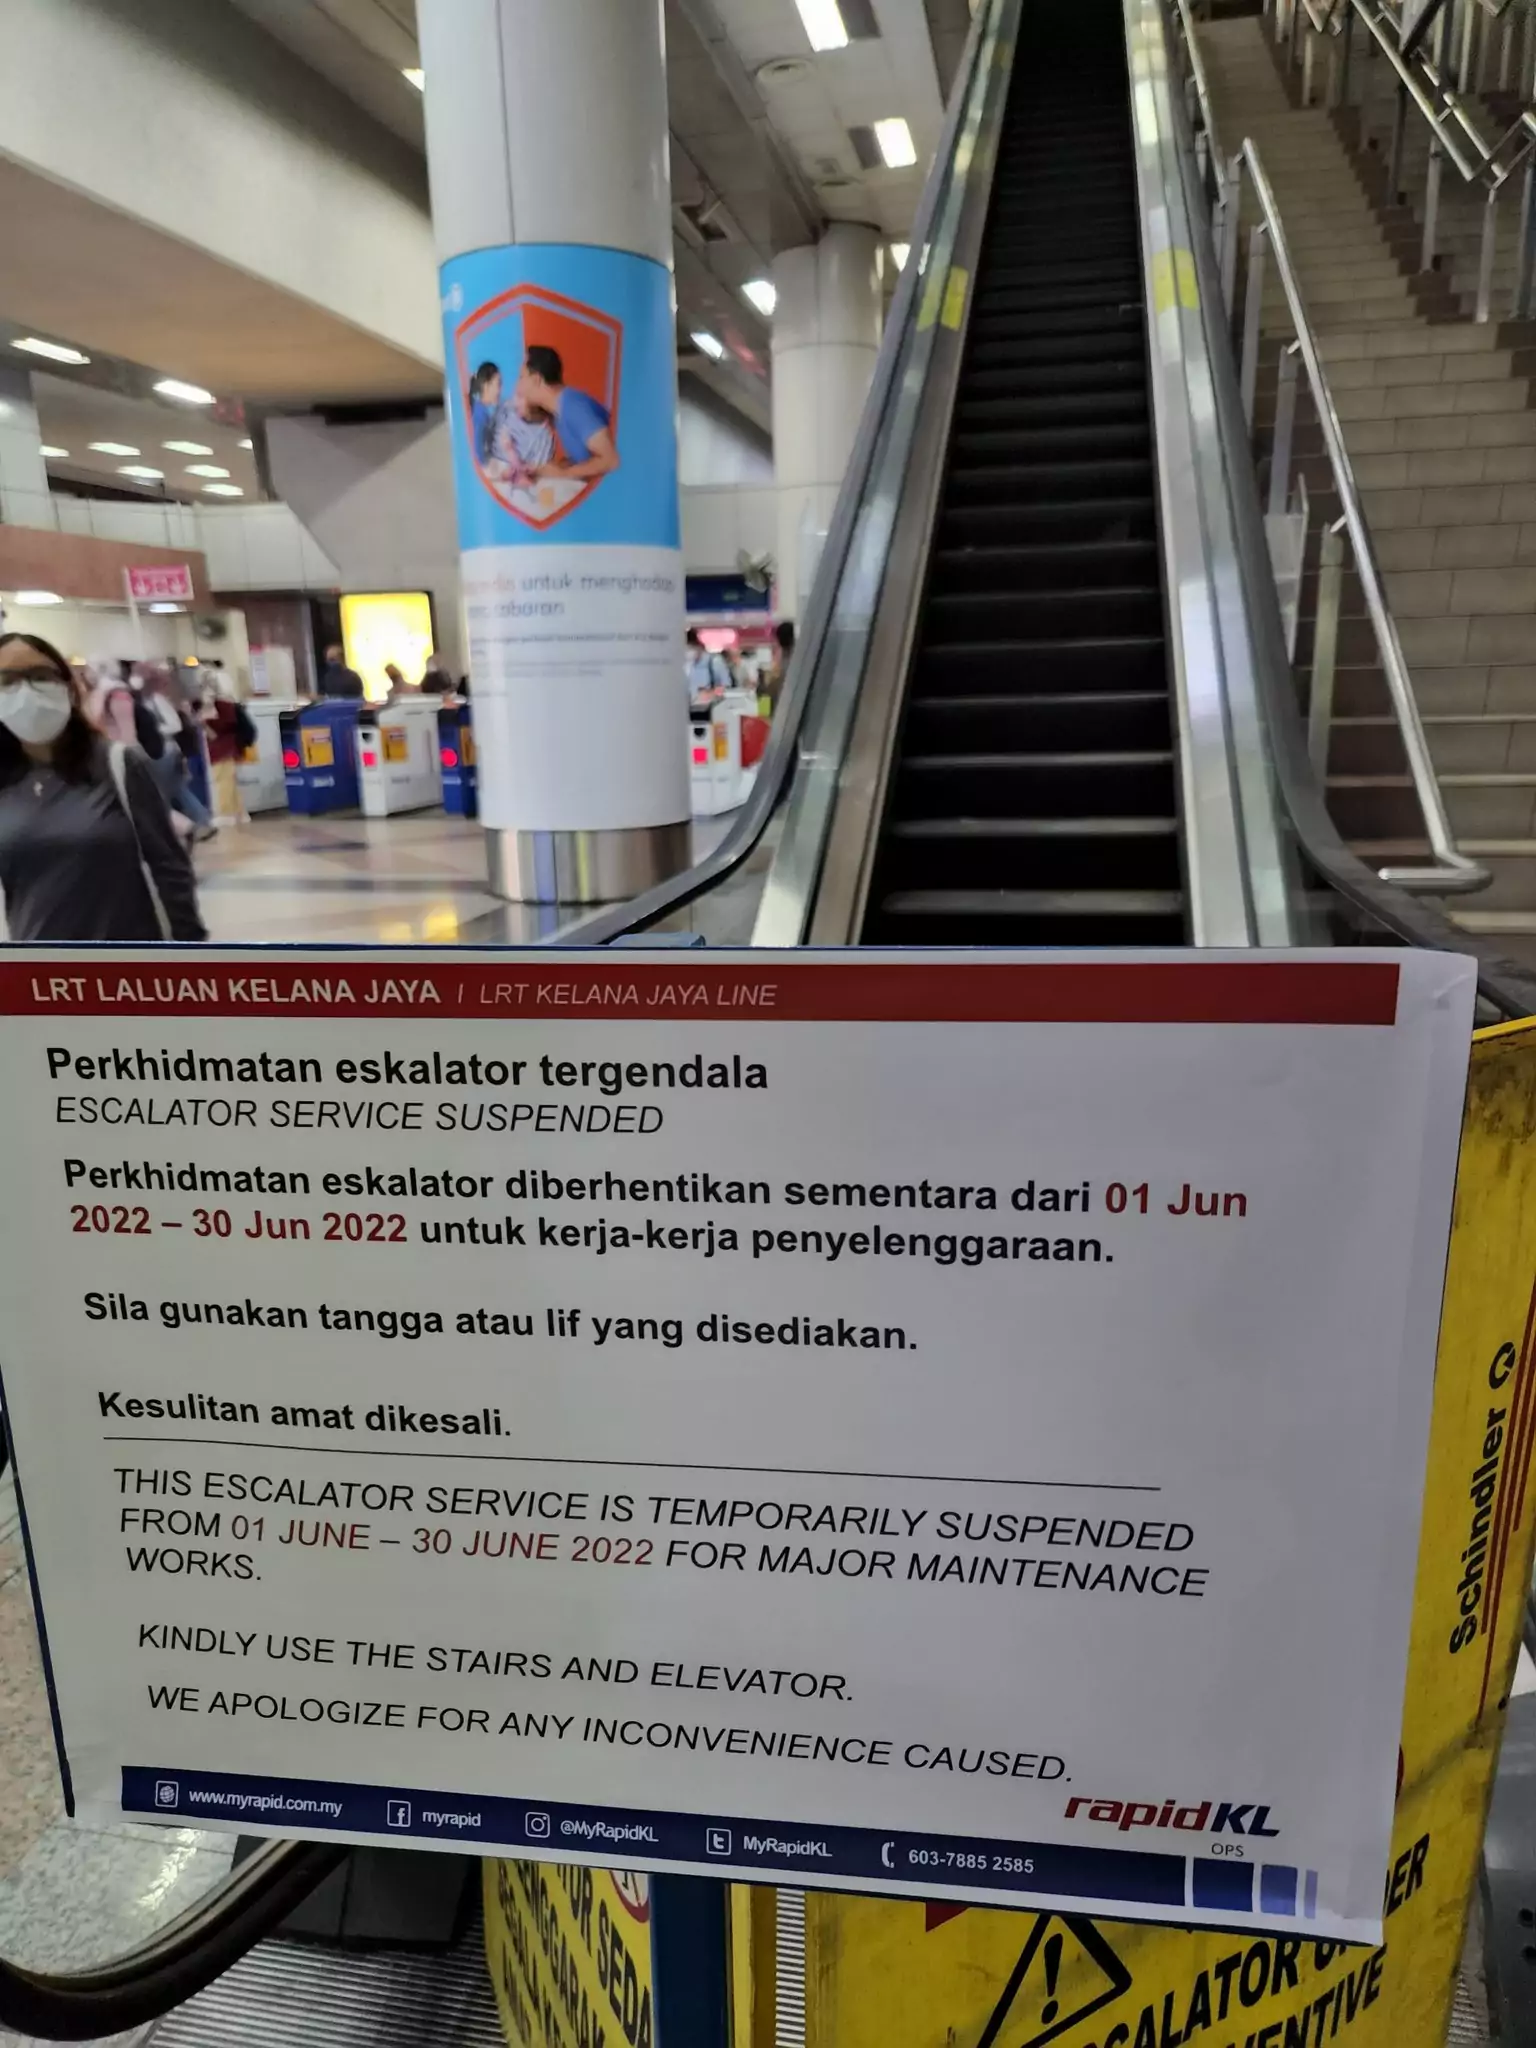 Broken escalator at mrt station